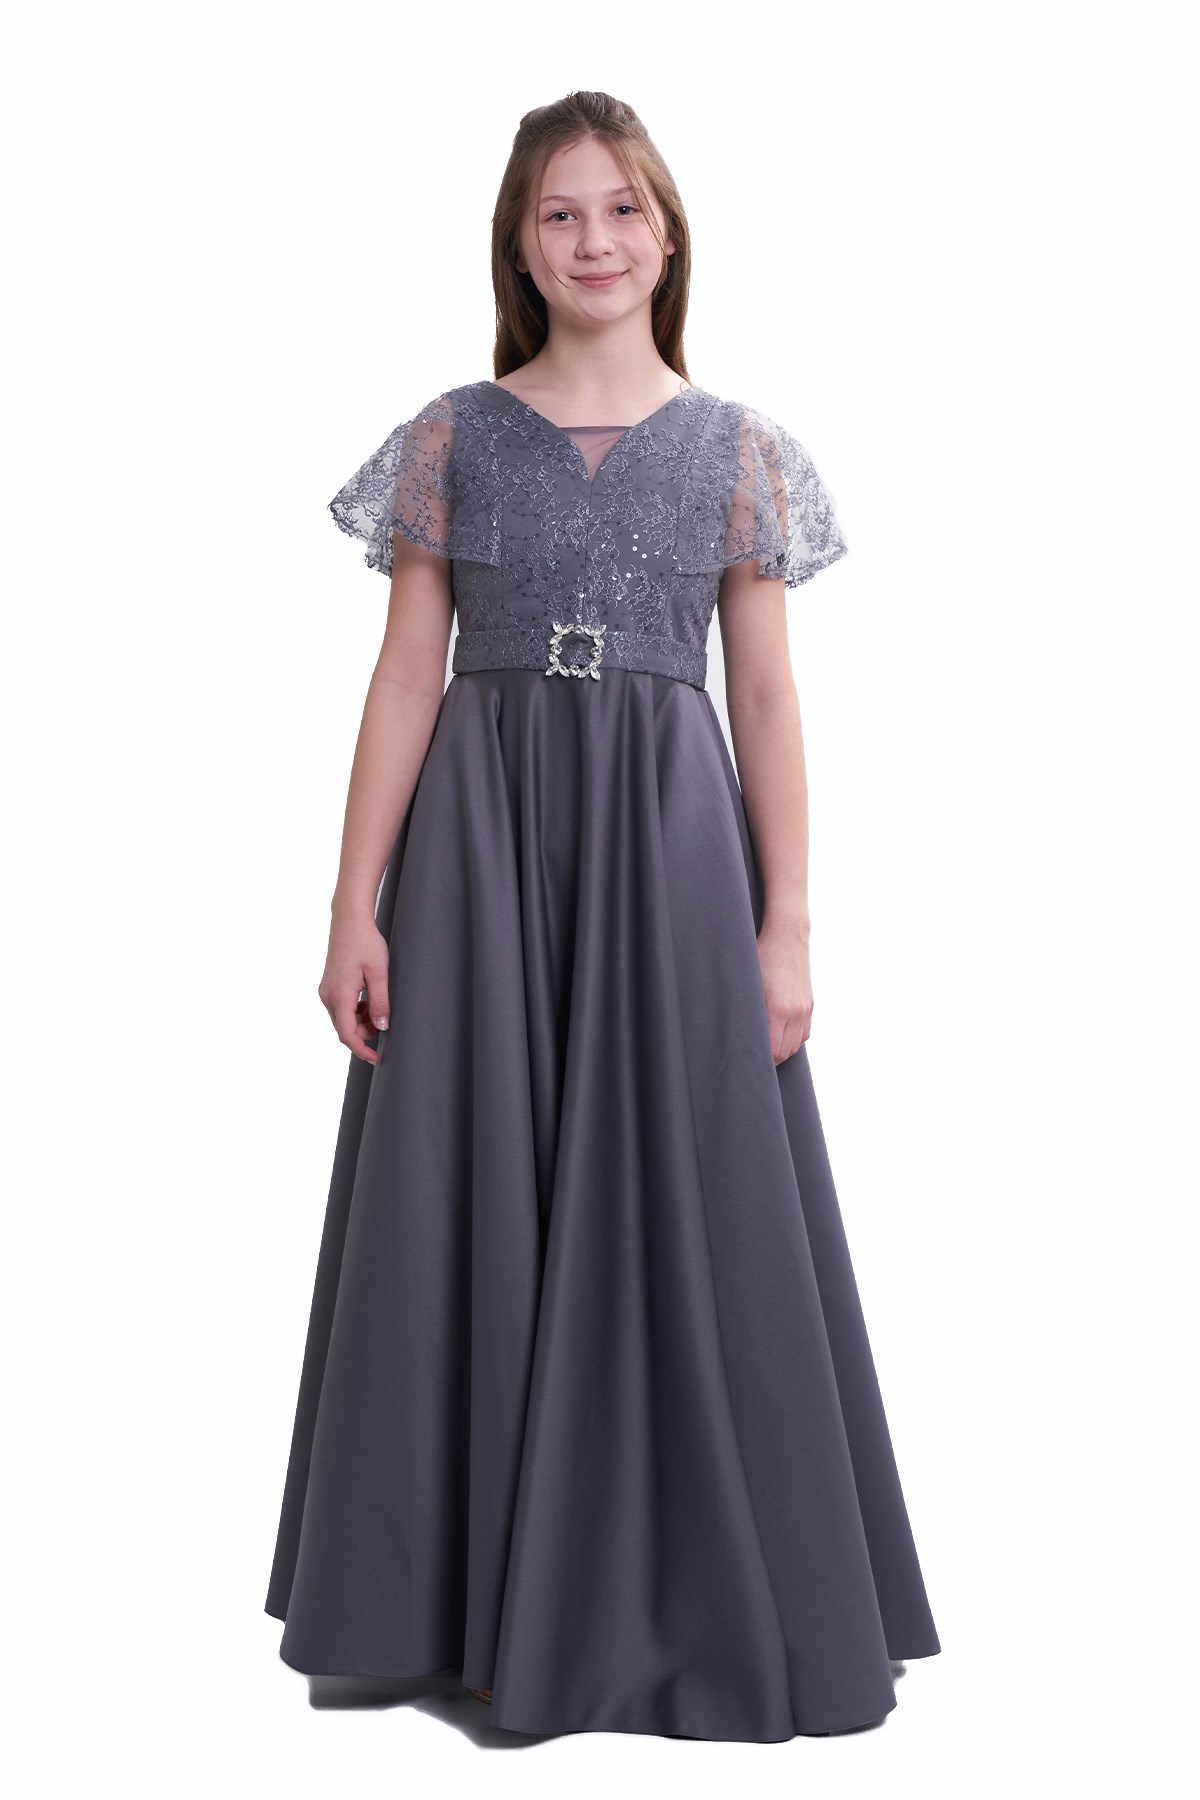 Kız Çocuk/Genç Tafta Kumaş Abiye Elbise Düğün Balo Mezuniyet Özel Gün 5318  Koyu Gri 10-14 Yaş